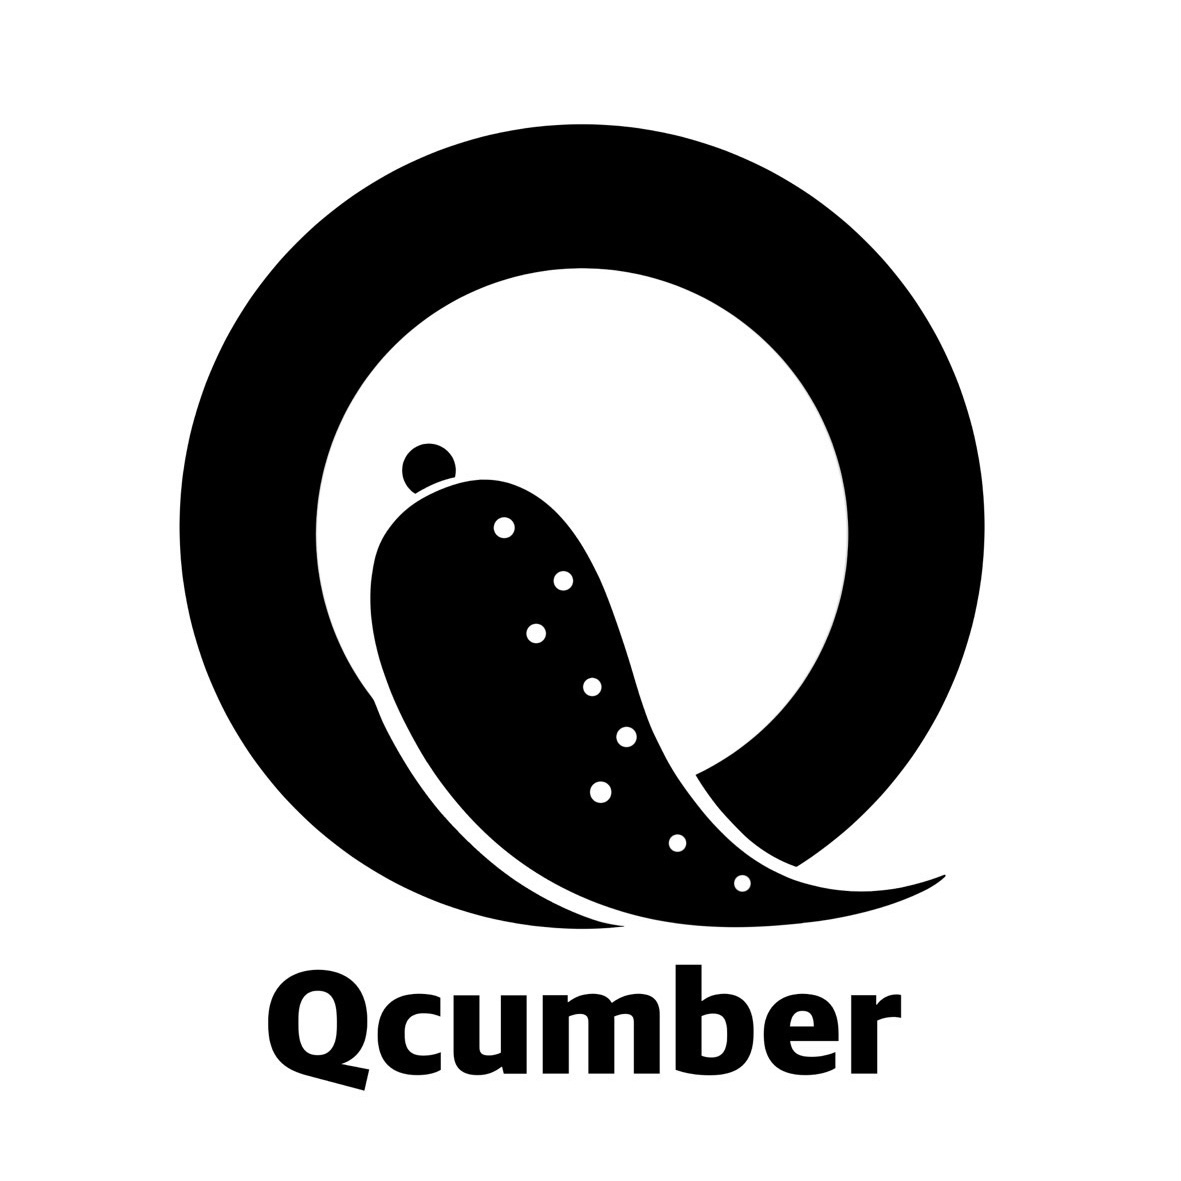 Qcumber